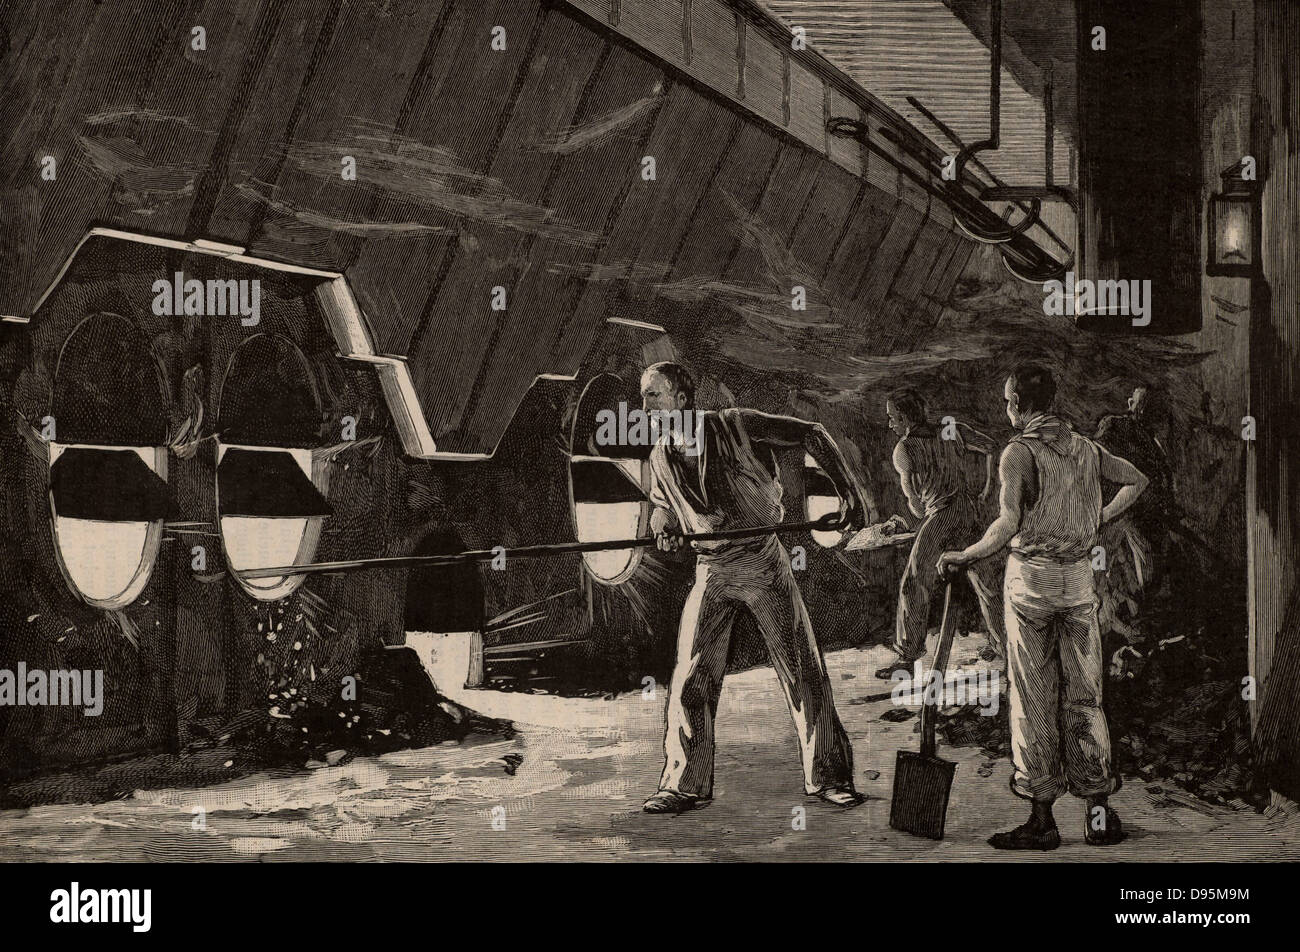 Heizer bei der Arbeit in der Hitze der Kesselraum eines transatlantischen Liner. Der Mann im Vordergrund ist, Harken Klinker aus dem Feuer, während der Mann weiter entlang der Reihe von Schaufeln ist in mehr Kohle. Von "La Science Illustree" (Paris, 1892). Gravur Stockfoto